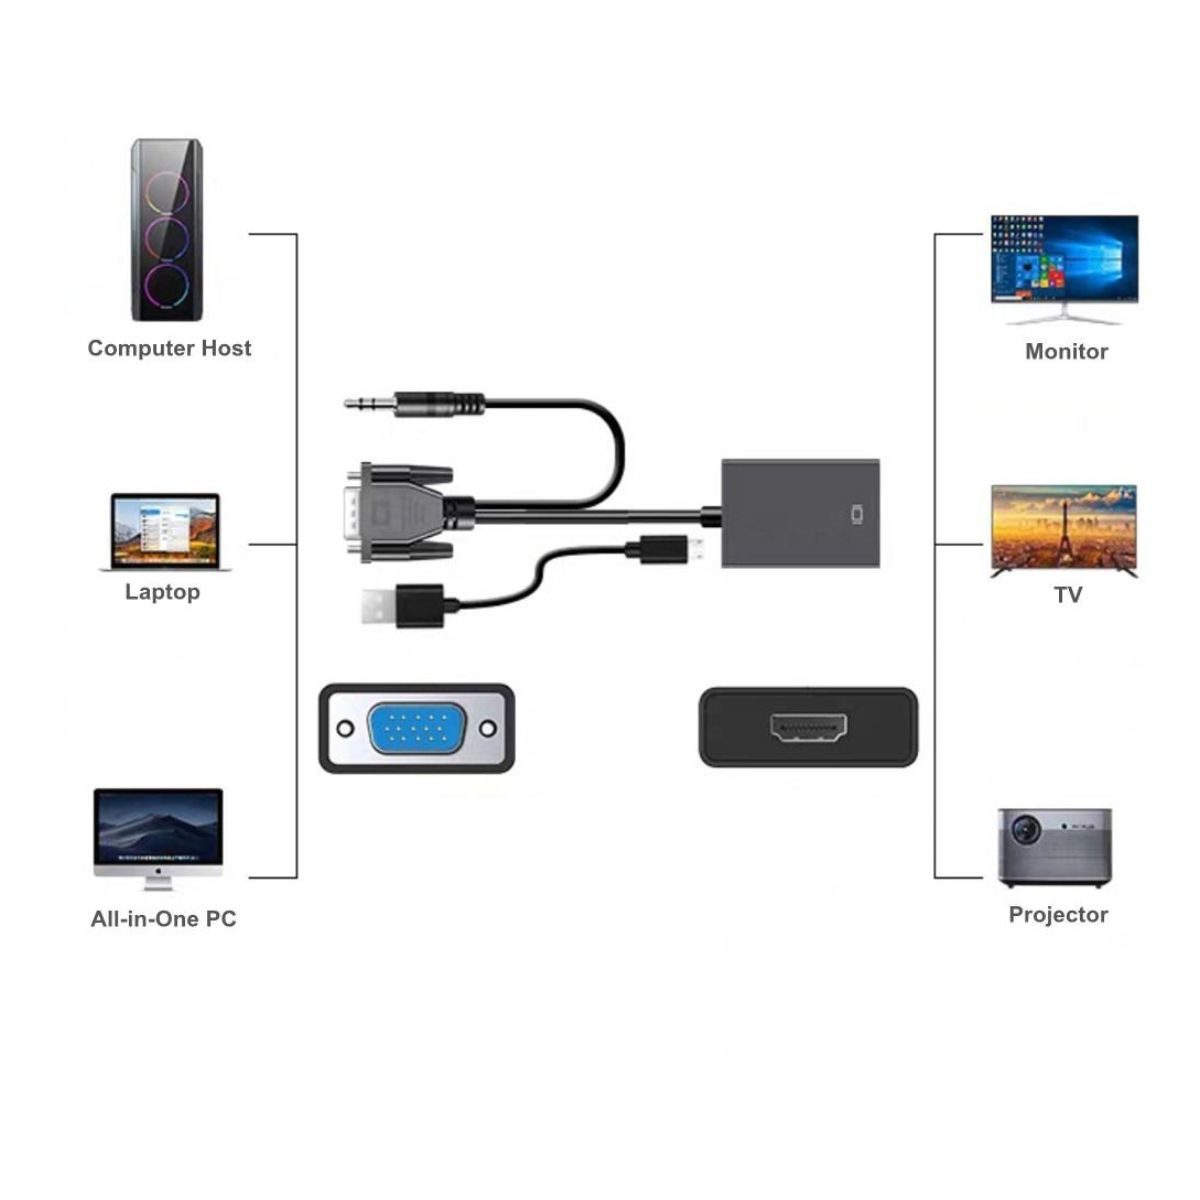 Convertidor VGA a HDMI con cable audio